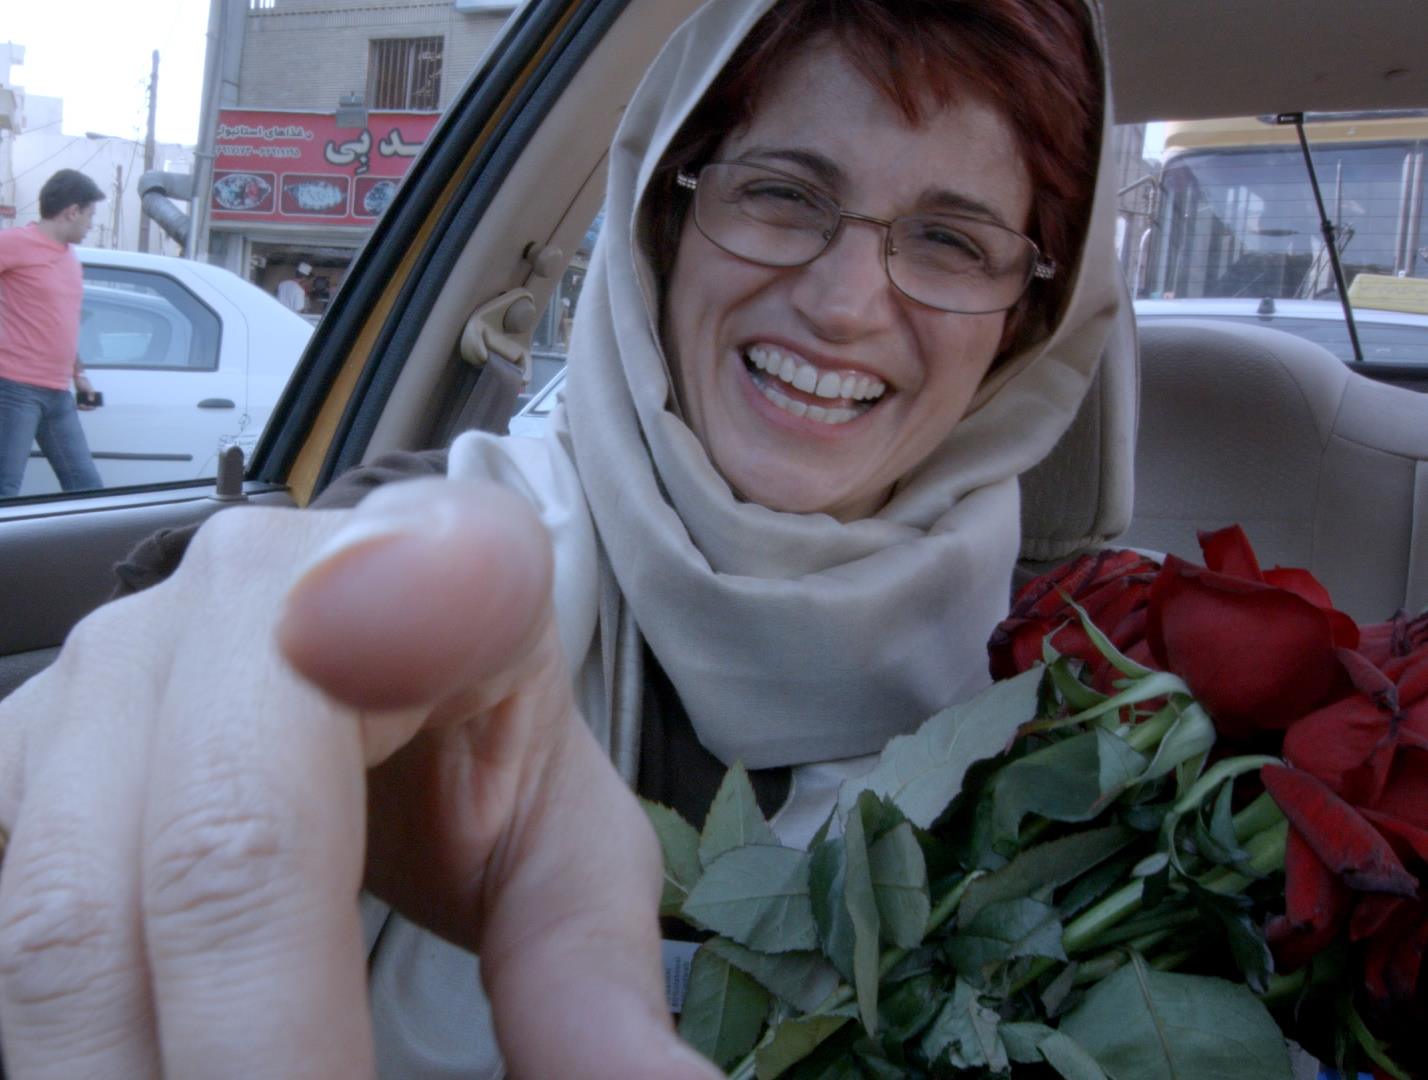 Znana irańska działaczka na rzecz praw człowieka, Nasrin Sotoudeh, została nagrodzona Alternatywną Nagrodą Nobla.